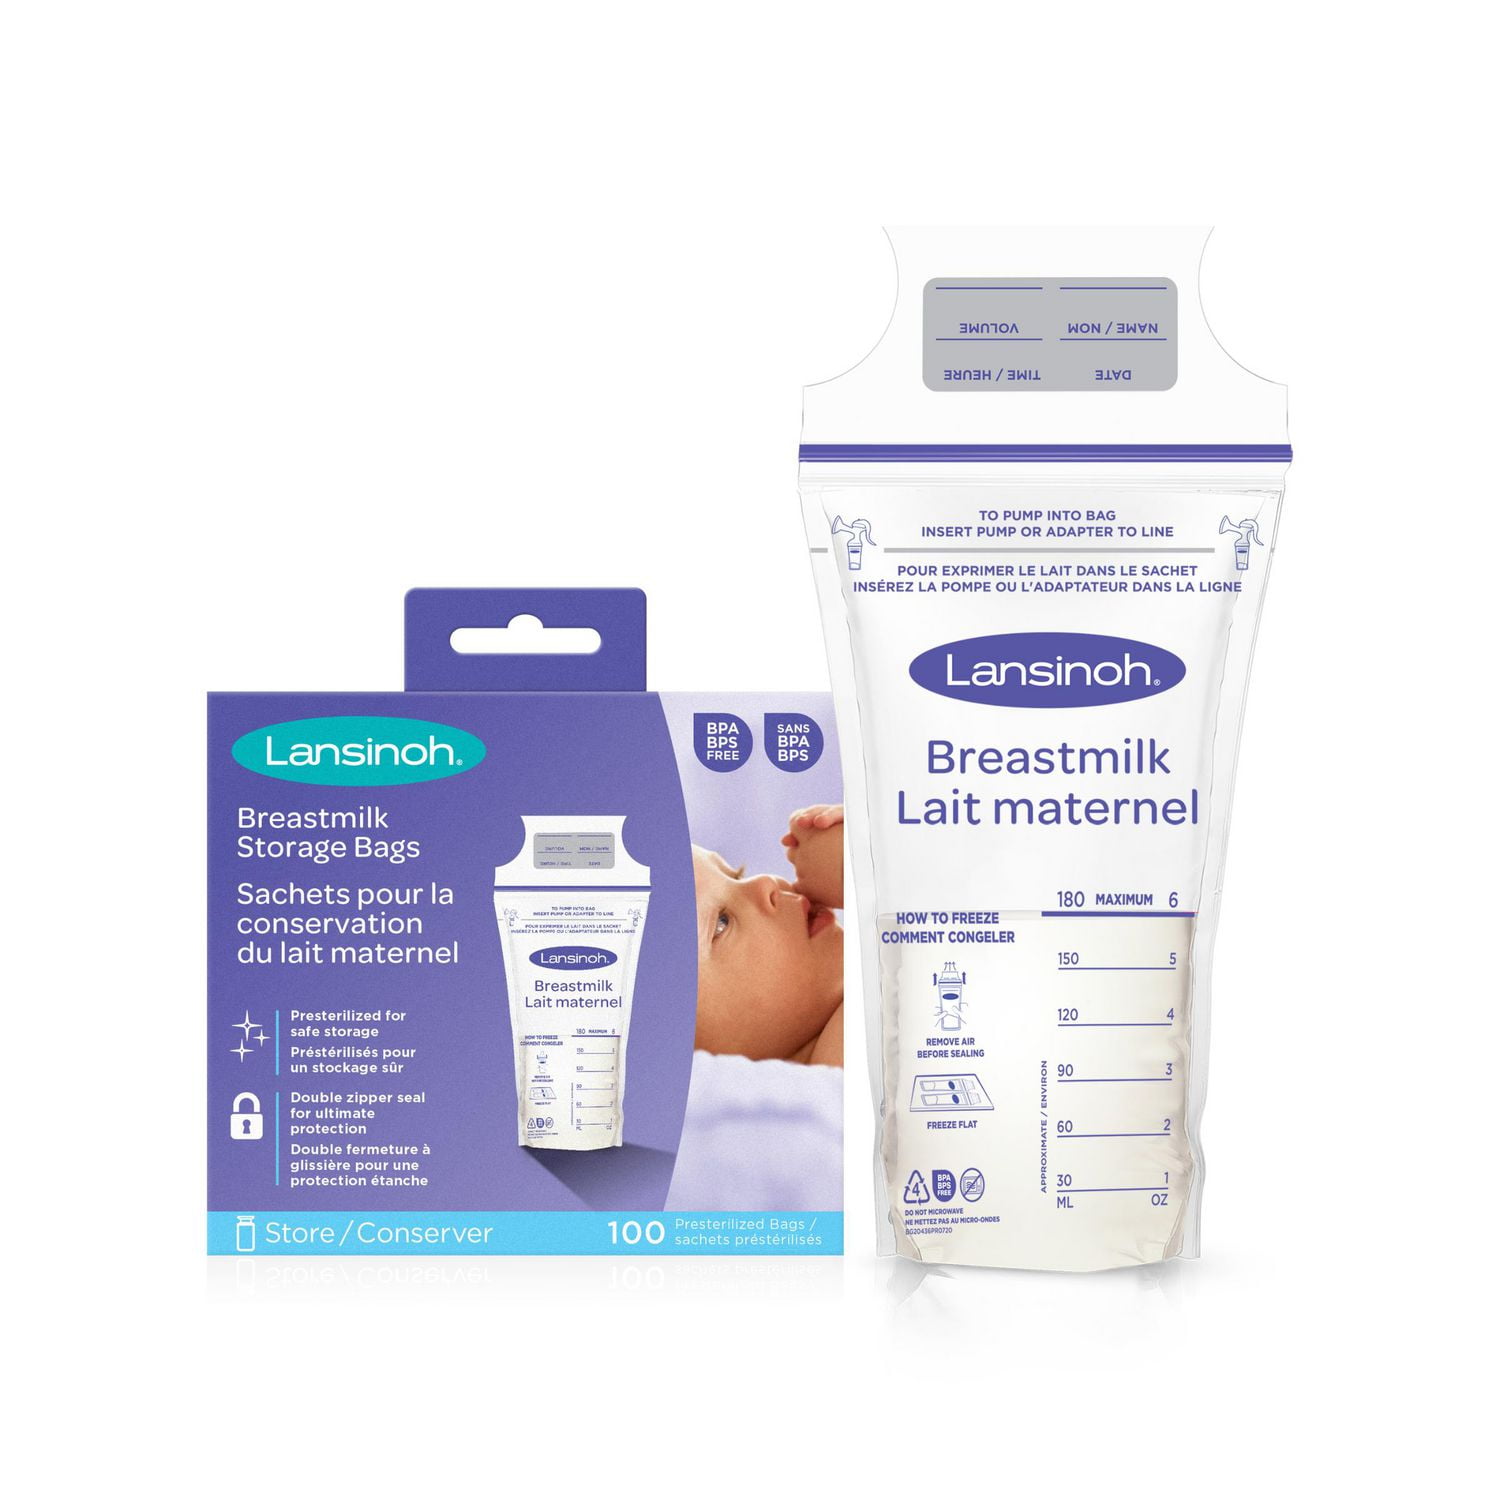 Medela Breast Milk Storage Bags 6oz/180ml - 100ct : Target